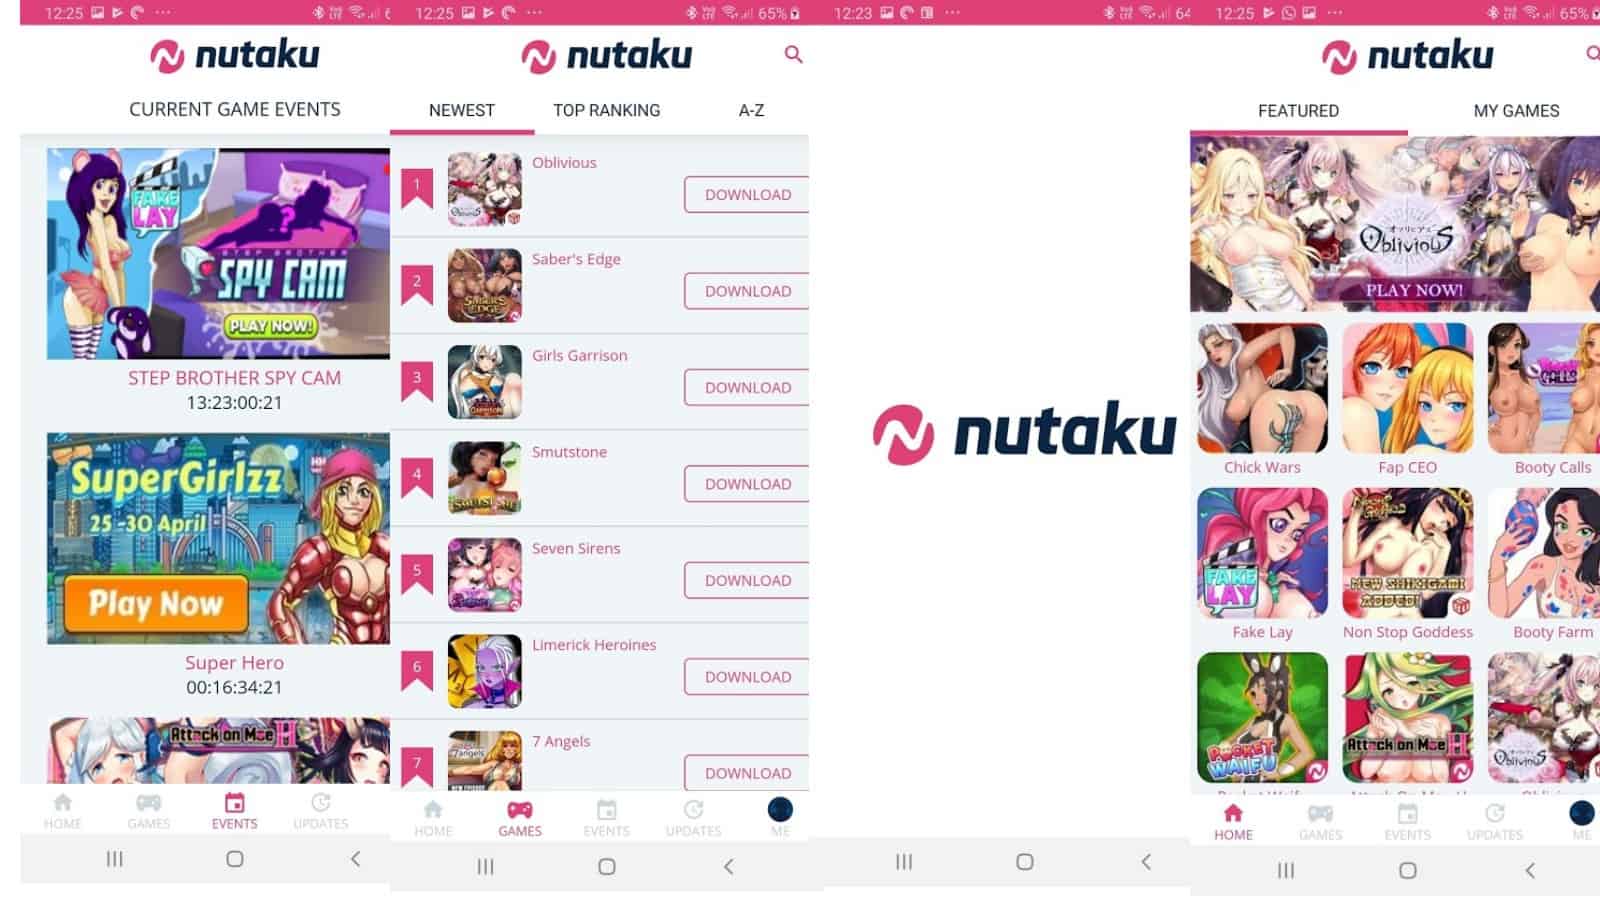 nutaku-featured-app